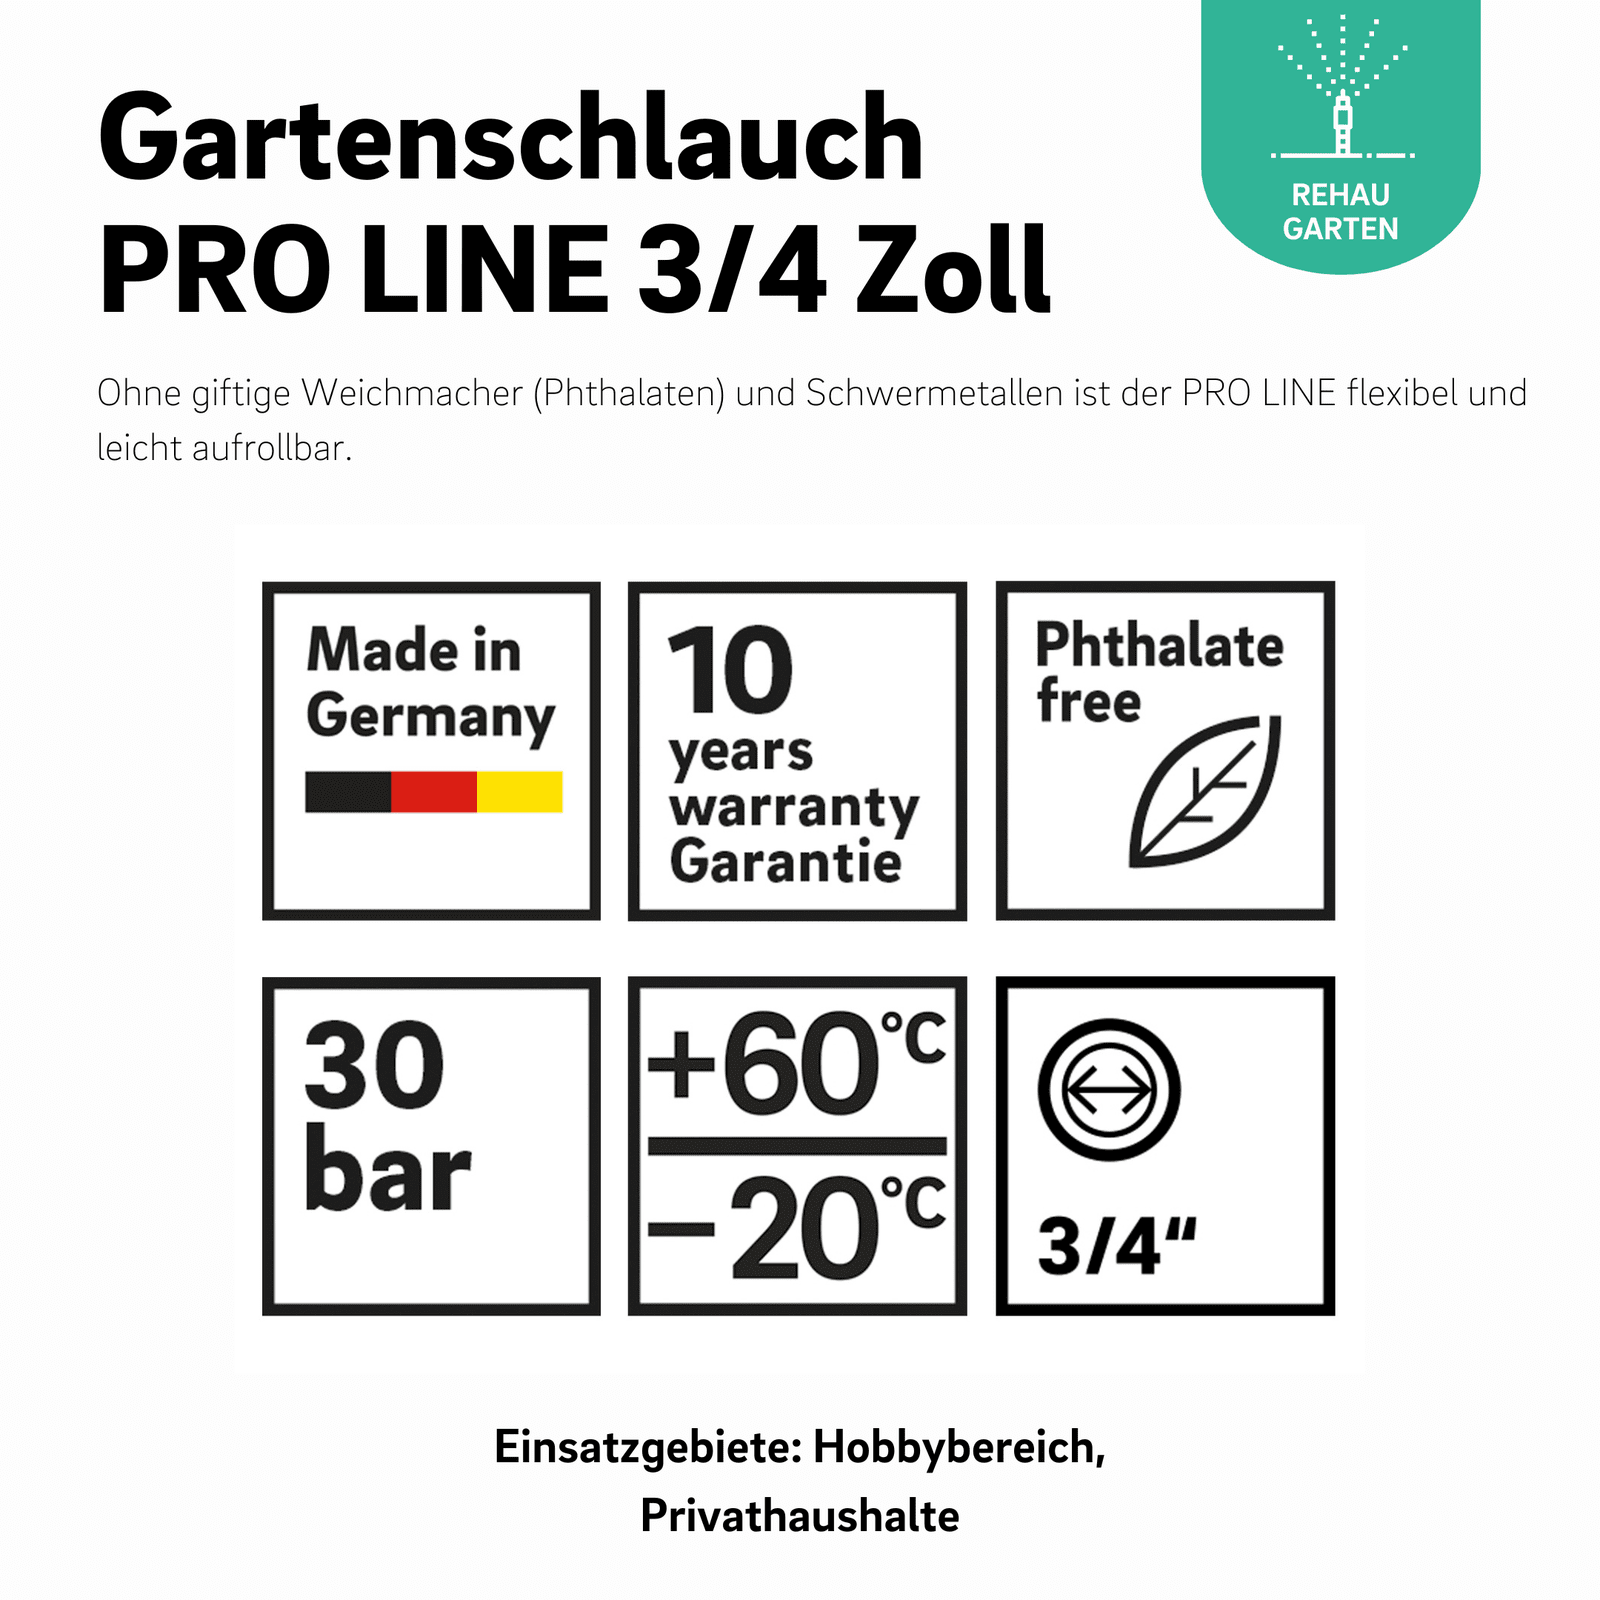 Gartenschlauch PRO LINE 3/4 Zoll - REHAU Gartenshop